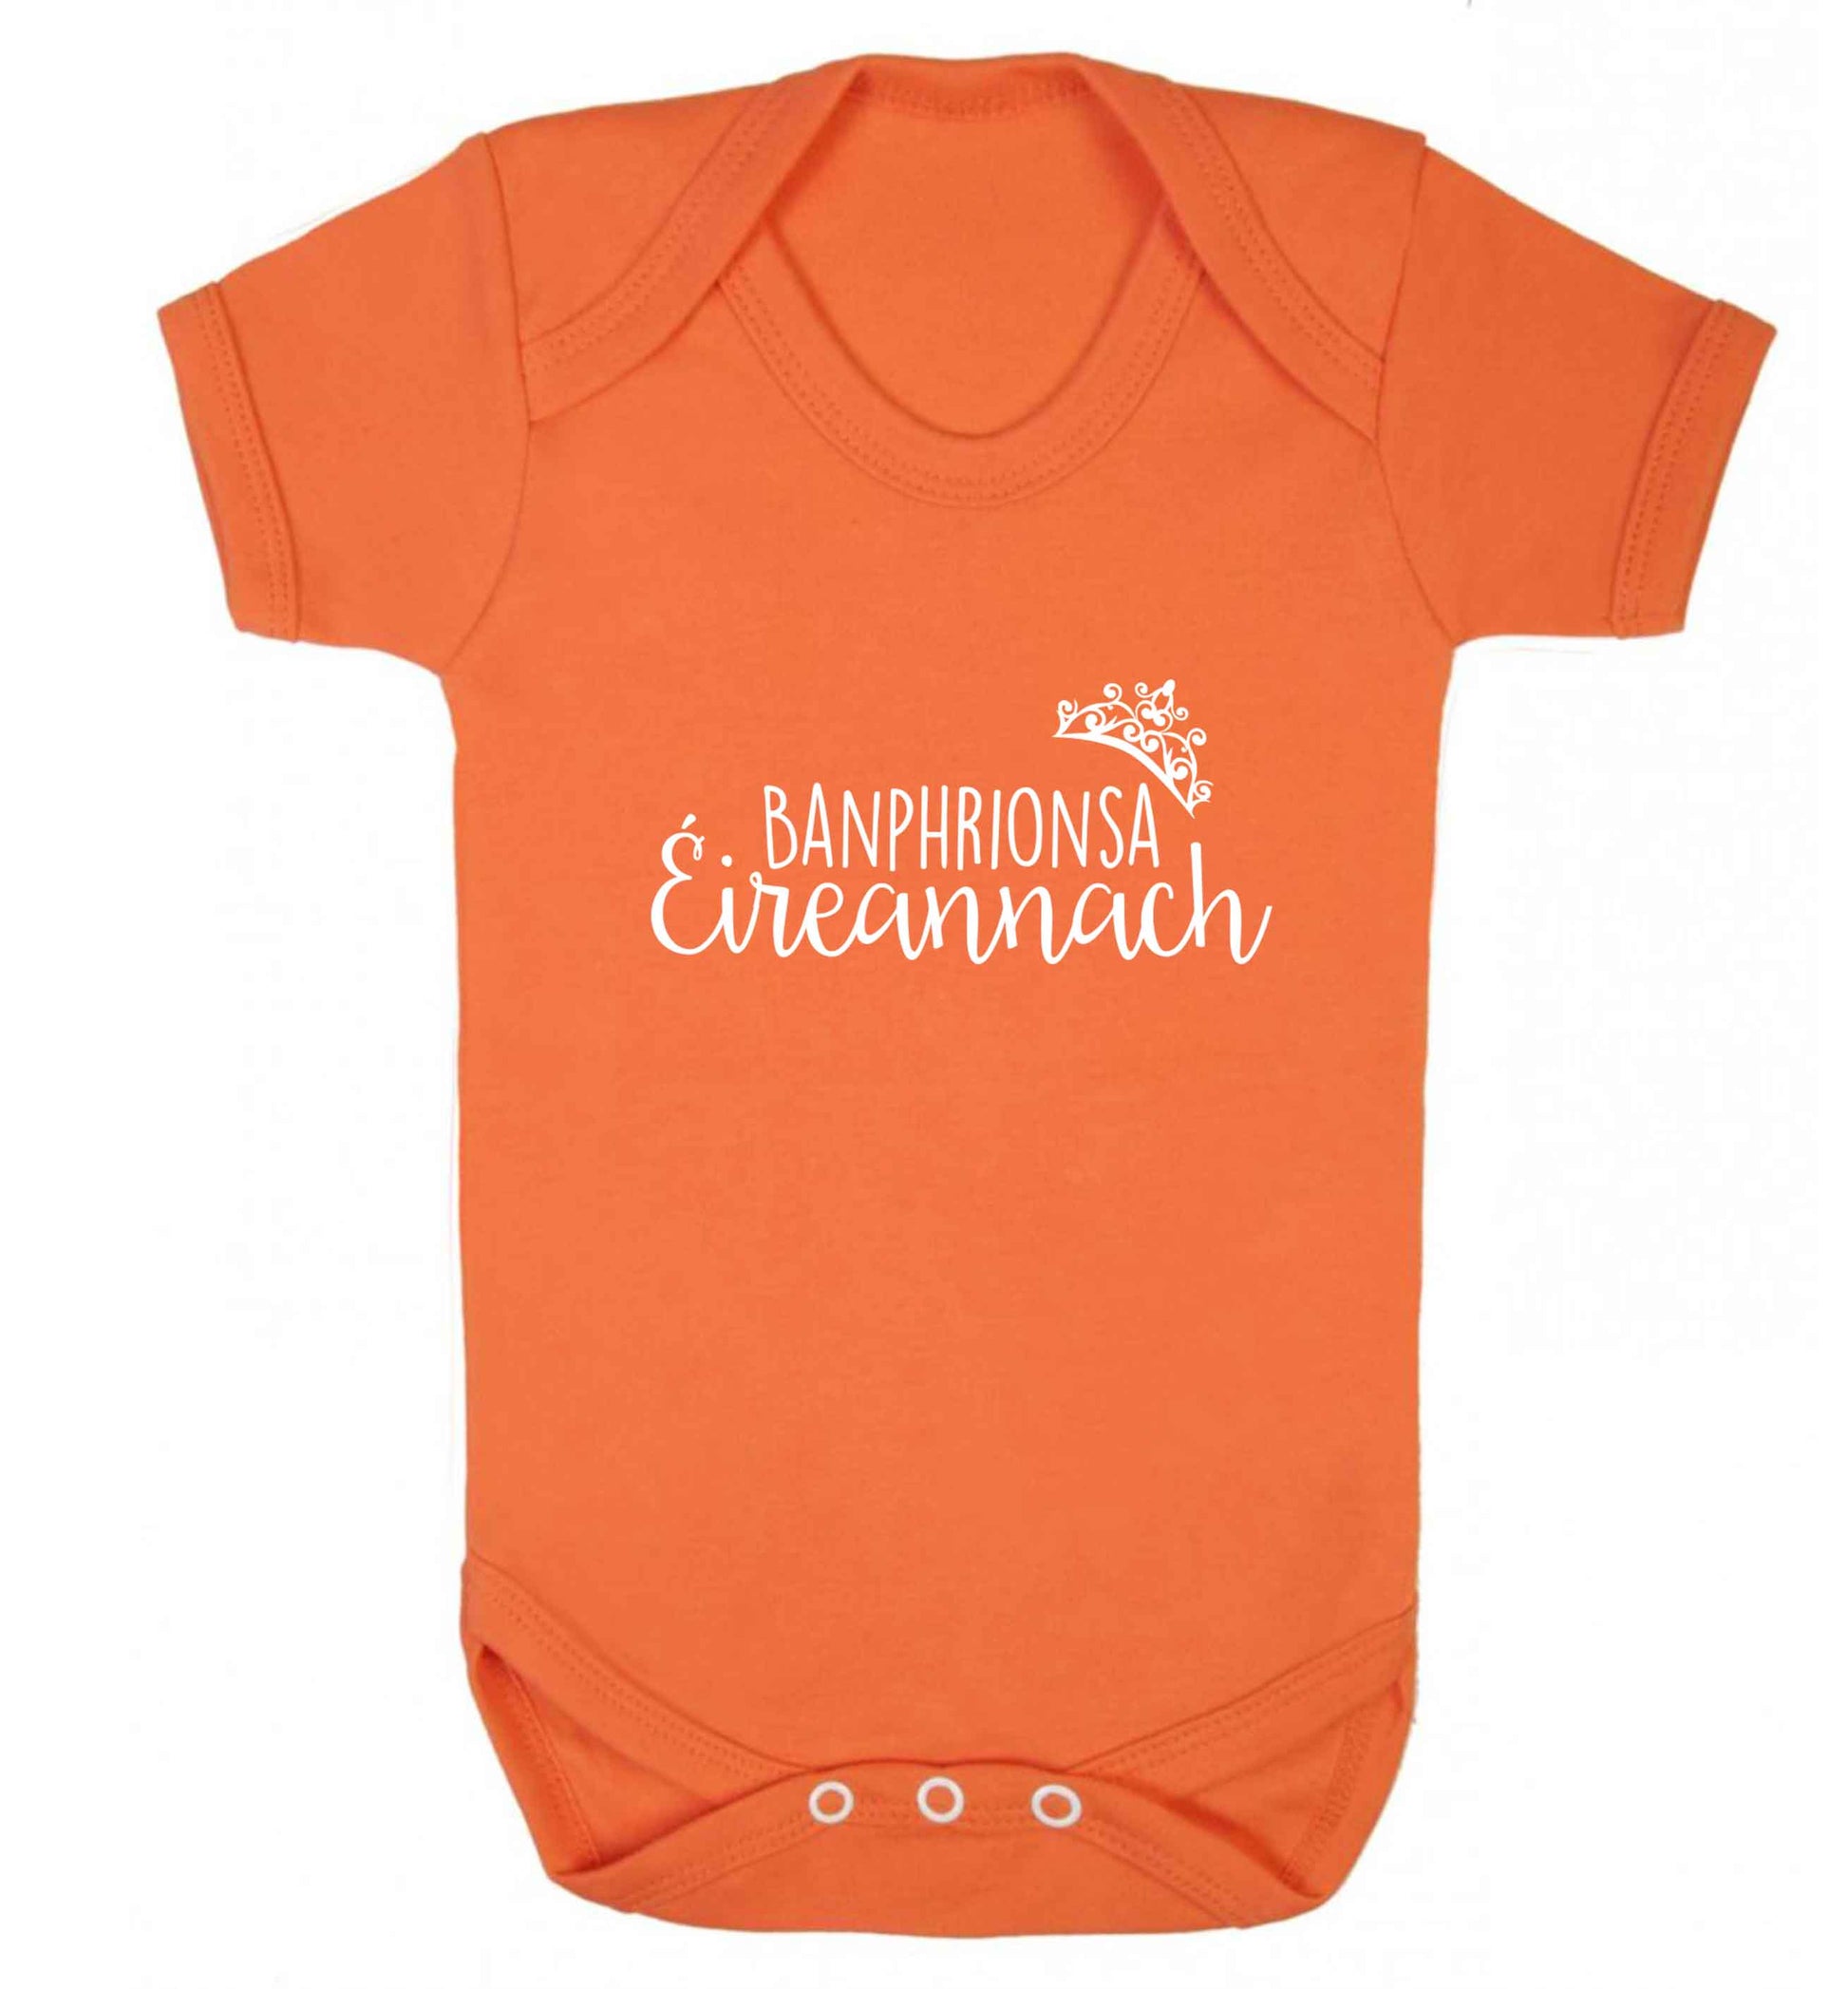 Banphrionsa eireannach baby vest orange 18-24 months